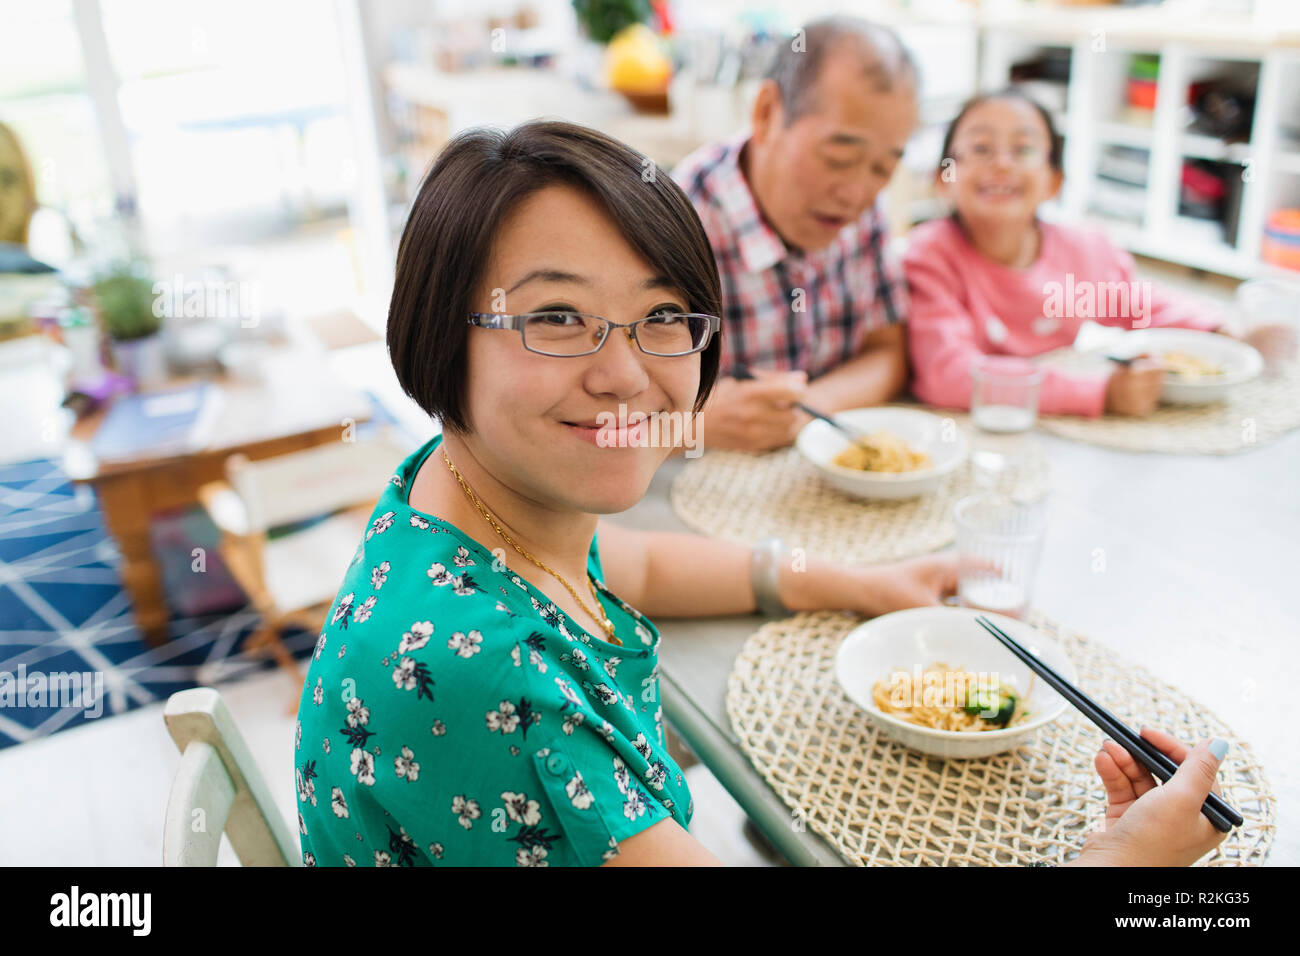 Ritratto di donna sorridente mangiare tagliatelle con la famiglia a tavola Foto Stock